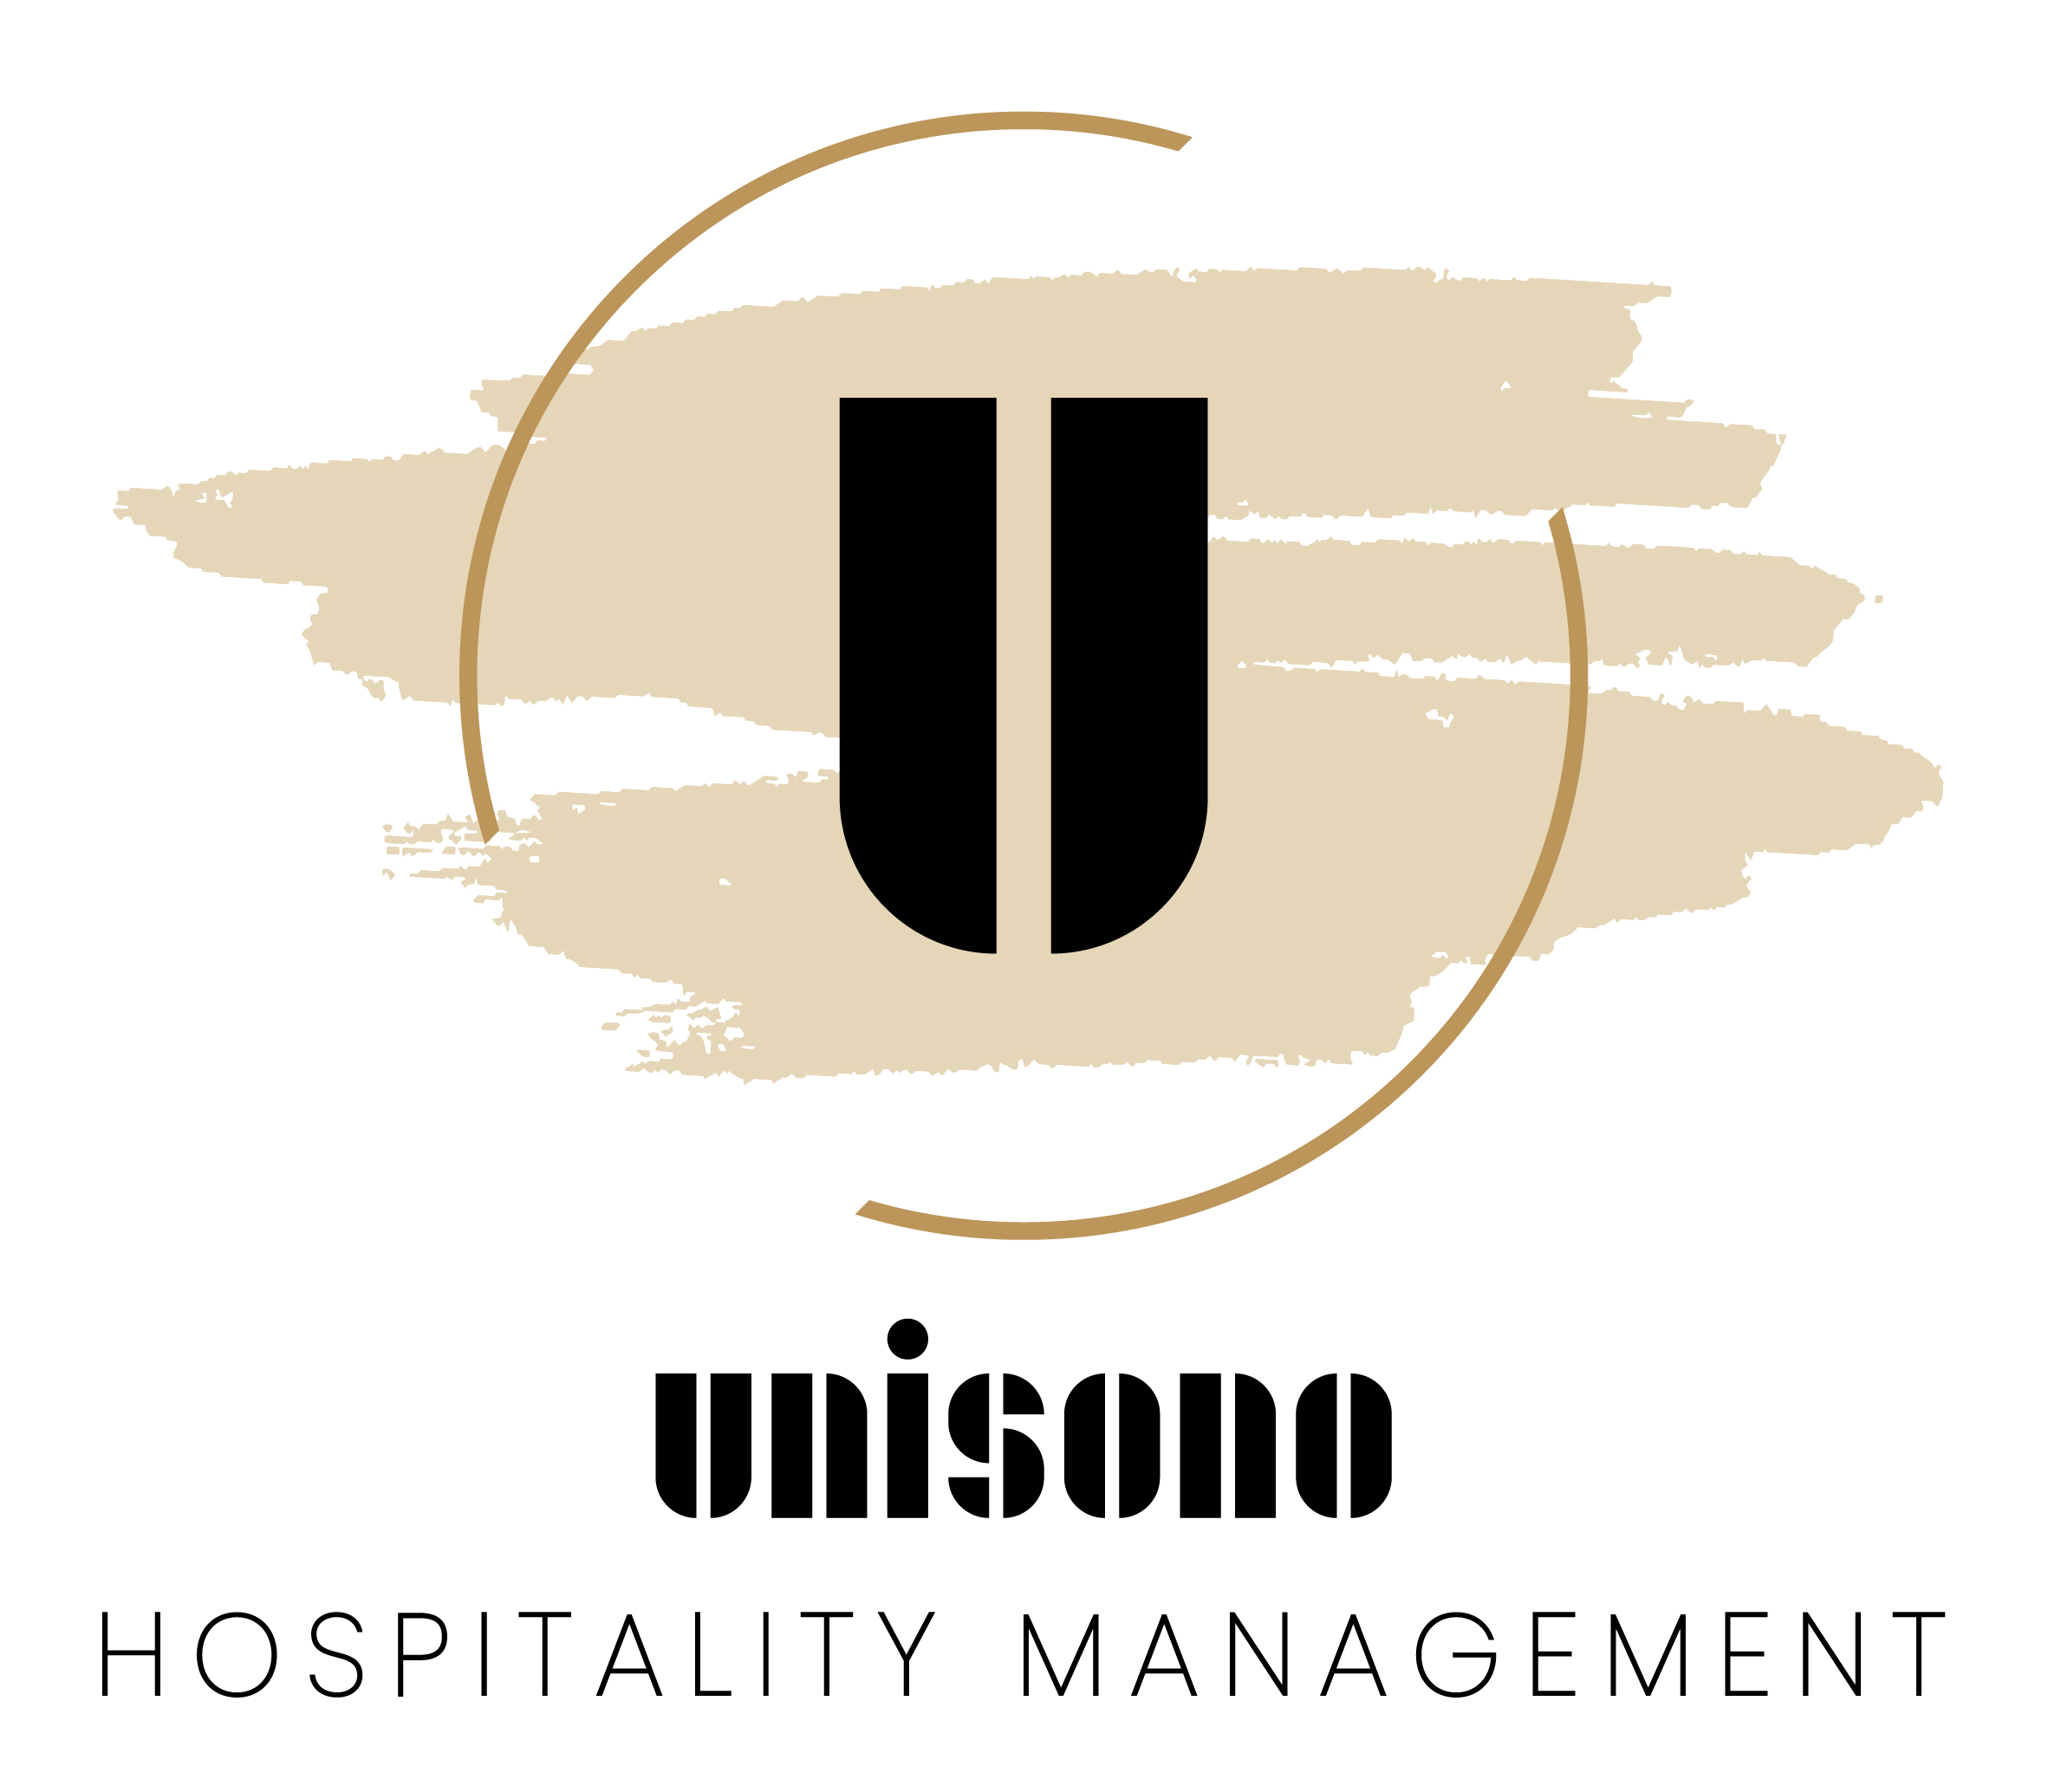 UNISONO Hospitality Management